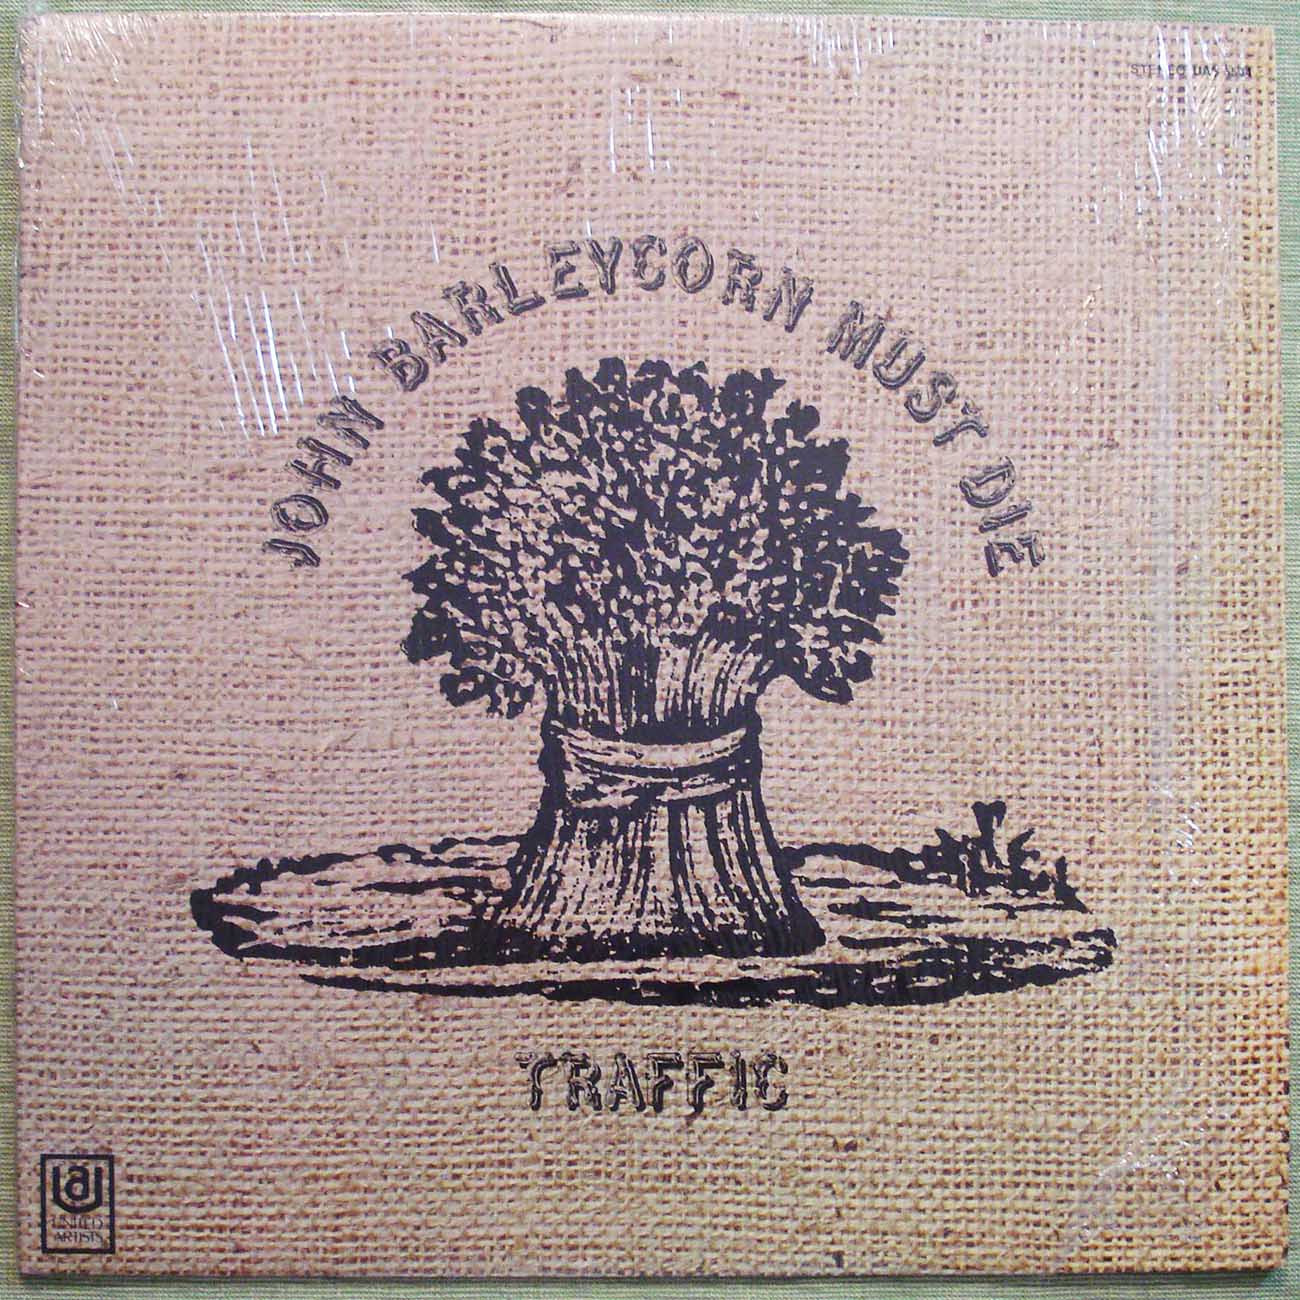 Traffic - John Barleycorn Must Die (1970) Vinyl LP 33rpm UAS5504